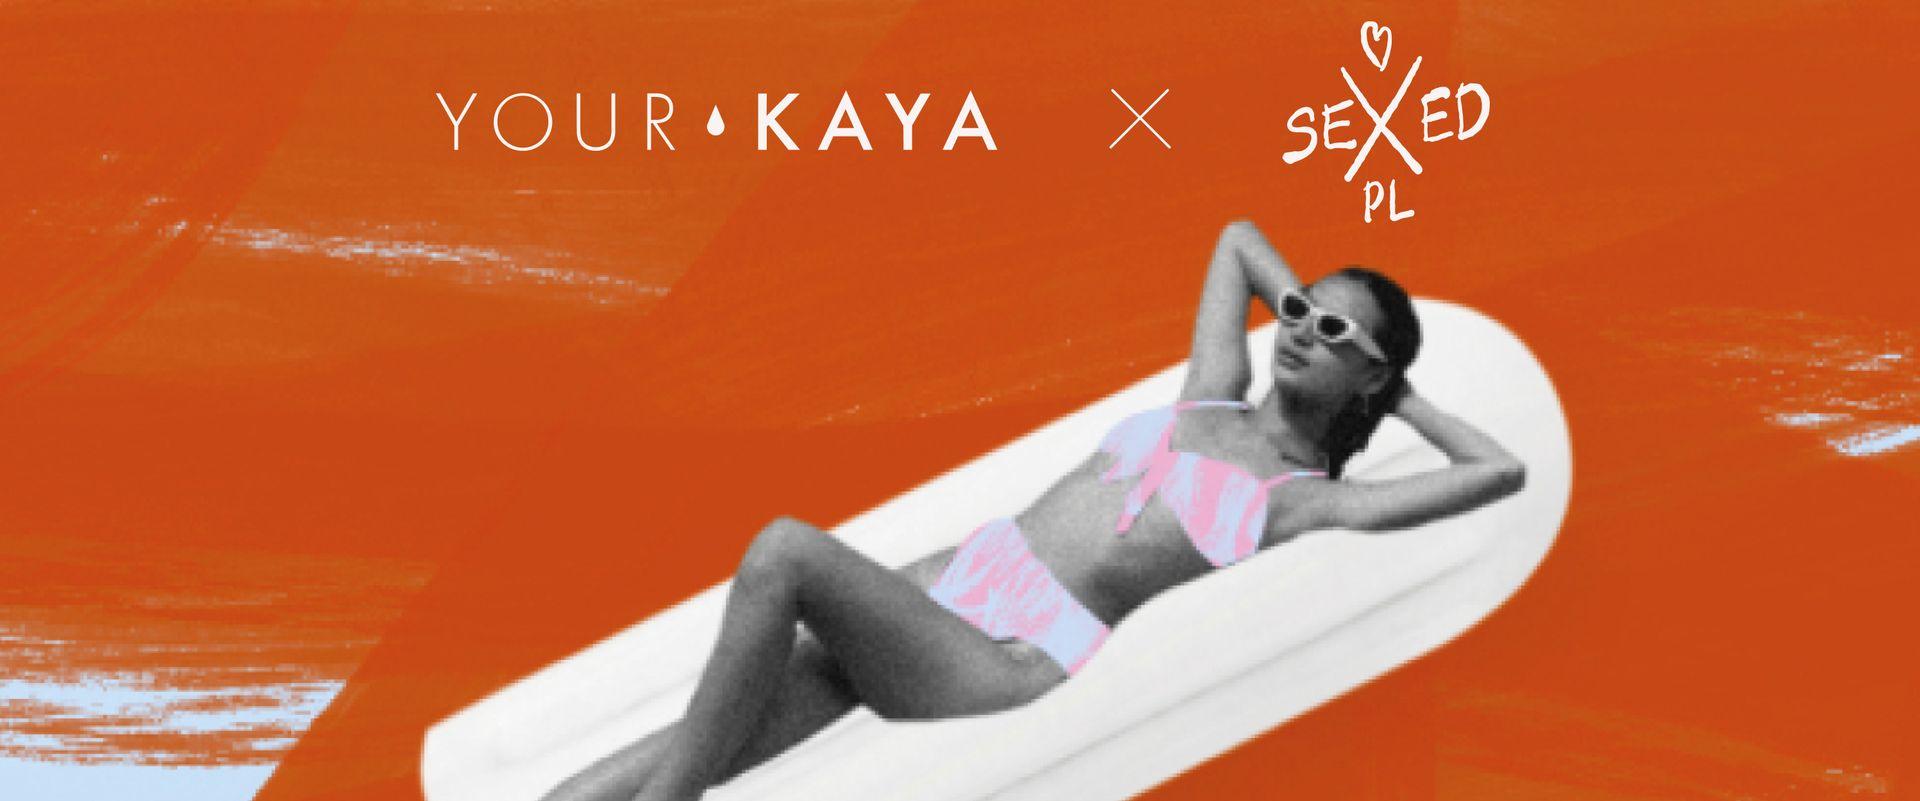 Witaj w Klubie - Your Kaya i SexedPL przygotowują do pierwszej miesiączki